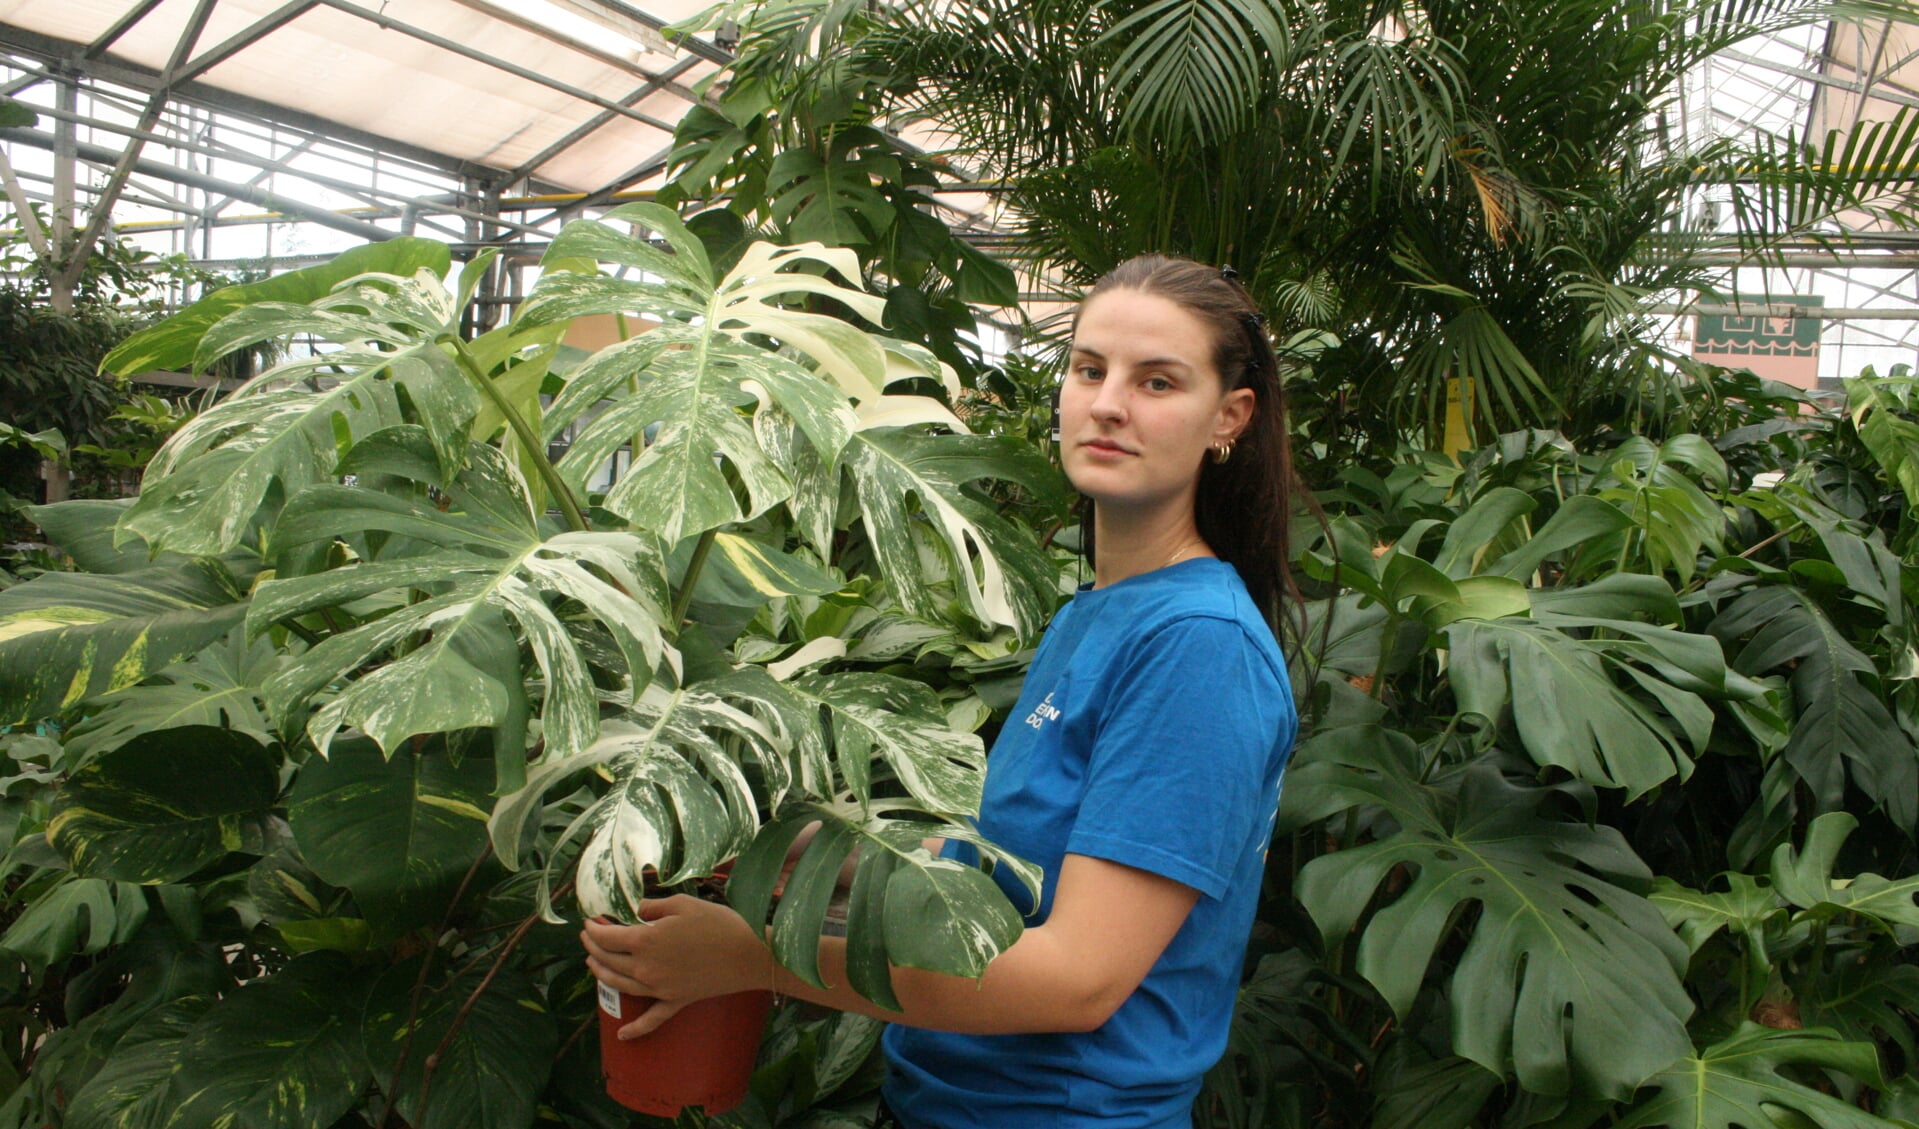 Steck verkoopt kamerplanten met het ypma-label, die groeien zonder chemische bestrijdingsmiddelen. 